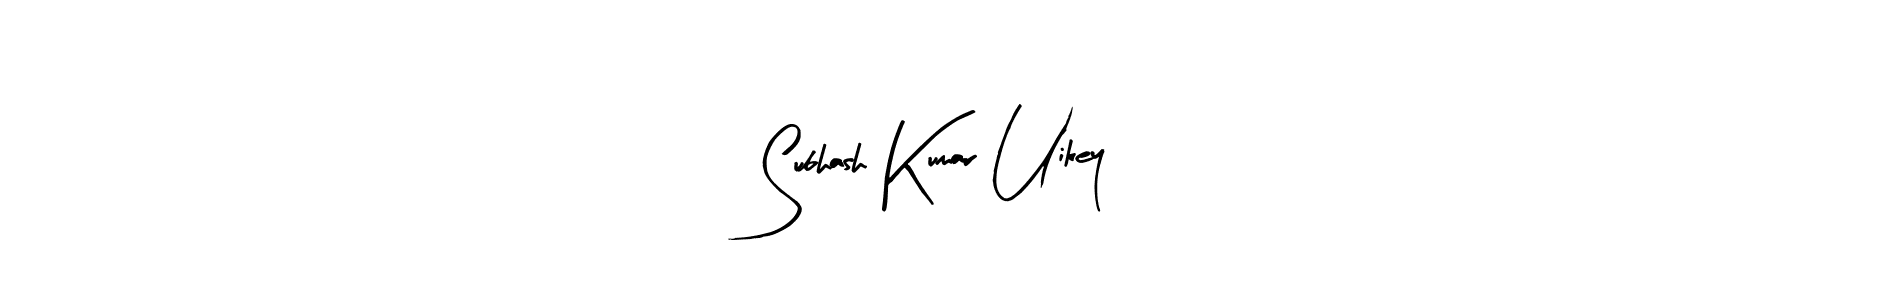 How to Draw Subhash Kumar Uikey signature style? Arty Signature is a latest design signature styles for name Subhash Kumar Uikey. Subhash Kumar Uikey signature style 8 images and pictures png